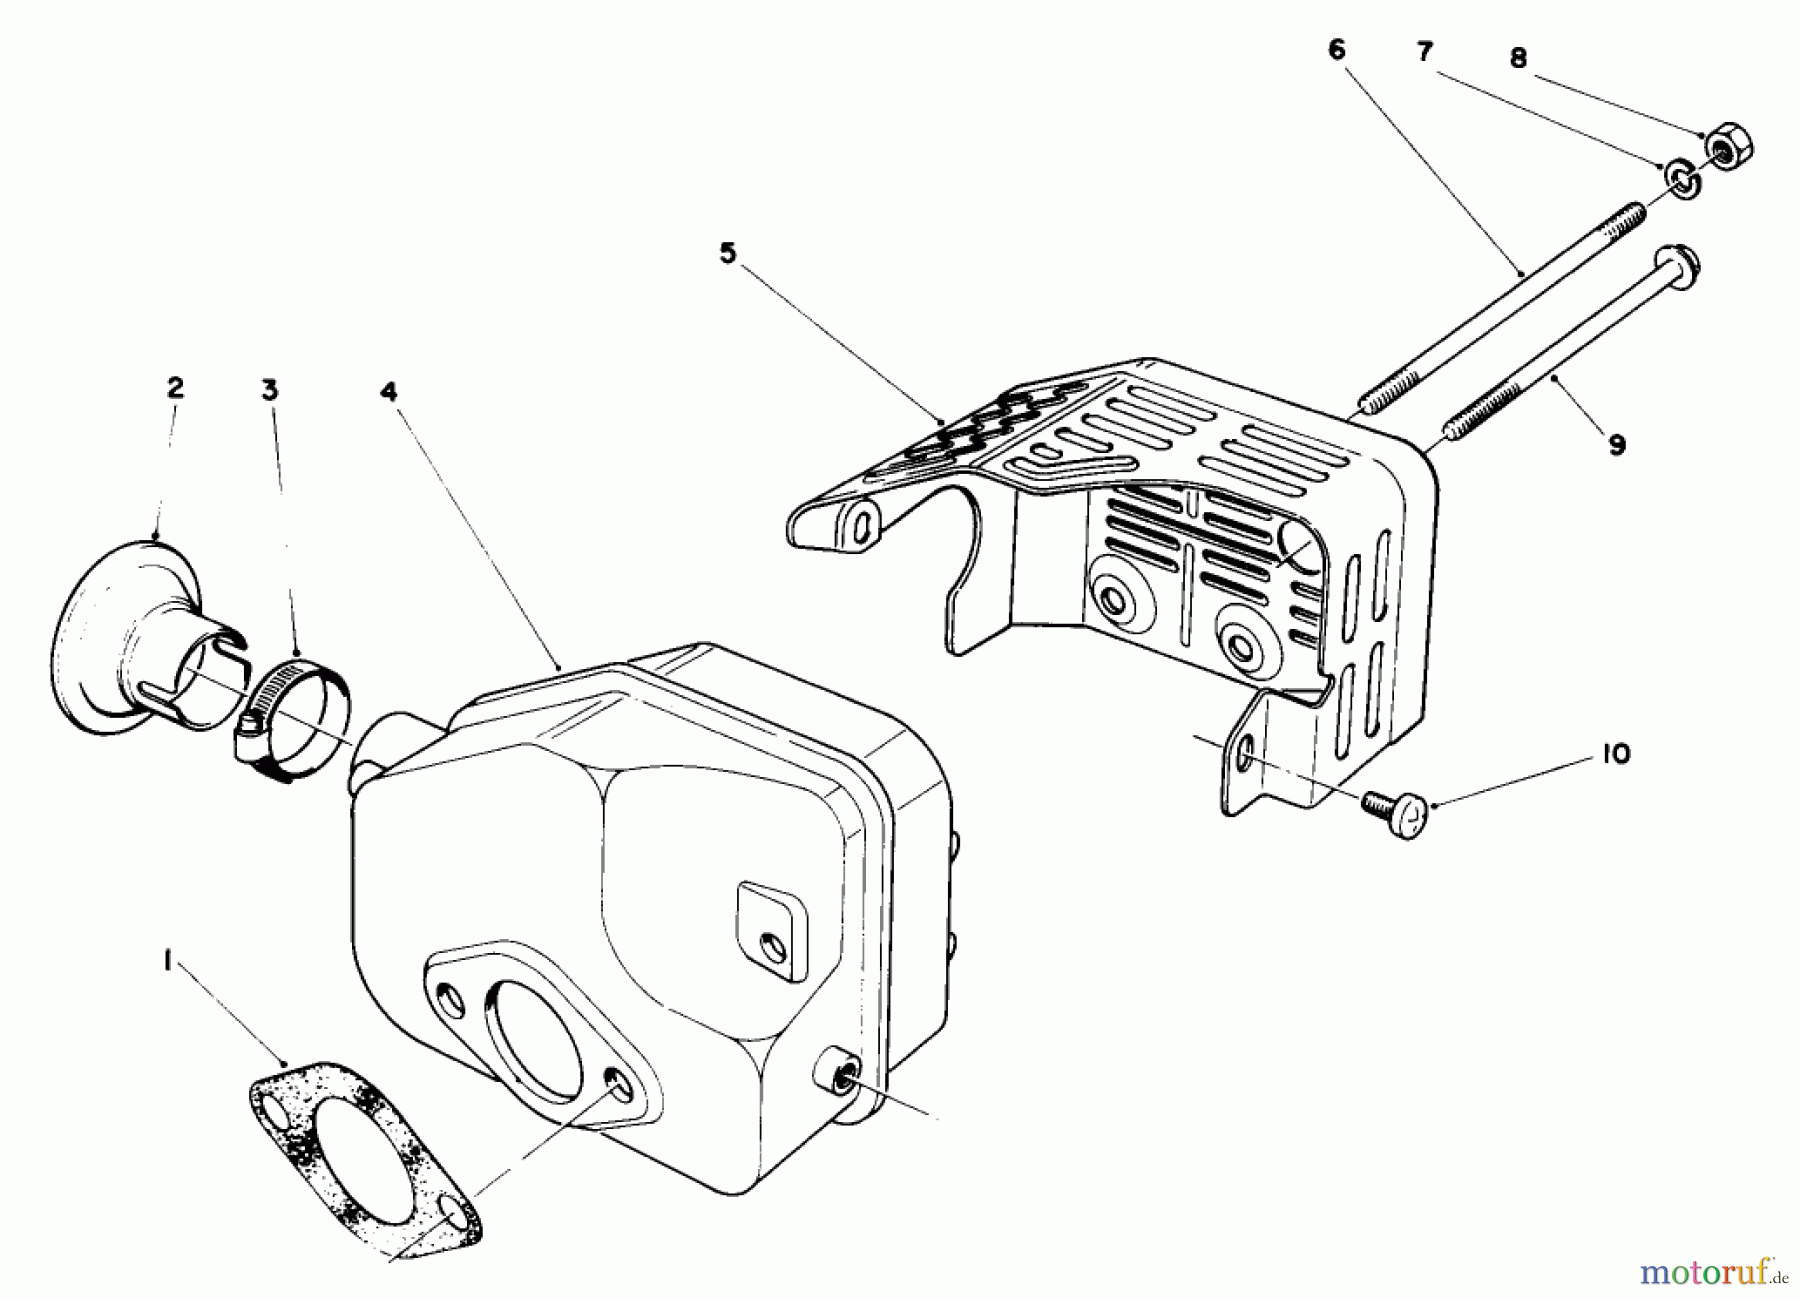  Toro Neu Mowers, Walk-Behind Seite 2 22030 - Toro Lawnmower, 1987 (7000001-7999999) ENGINE ASSEMBLY MODEL NO. 47PG6 #5